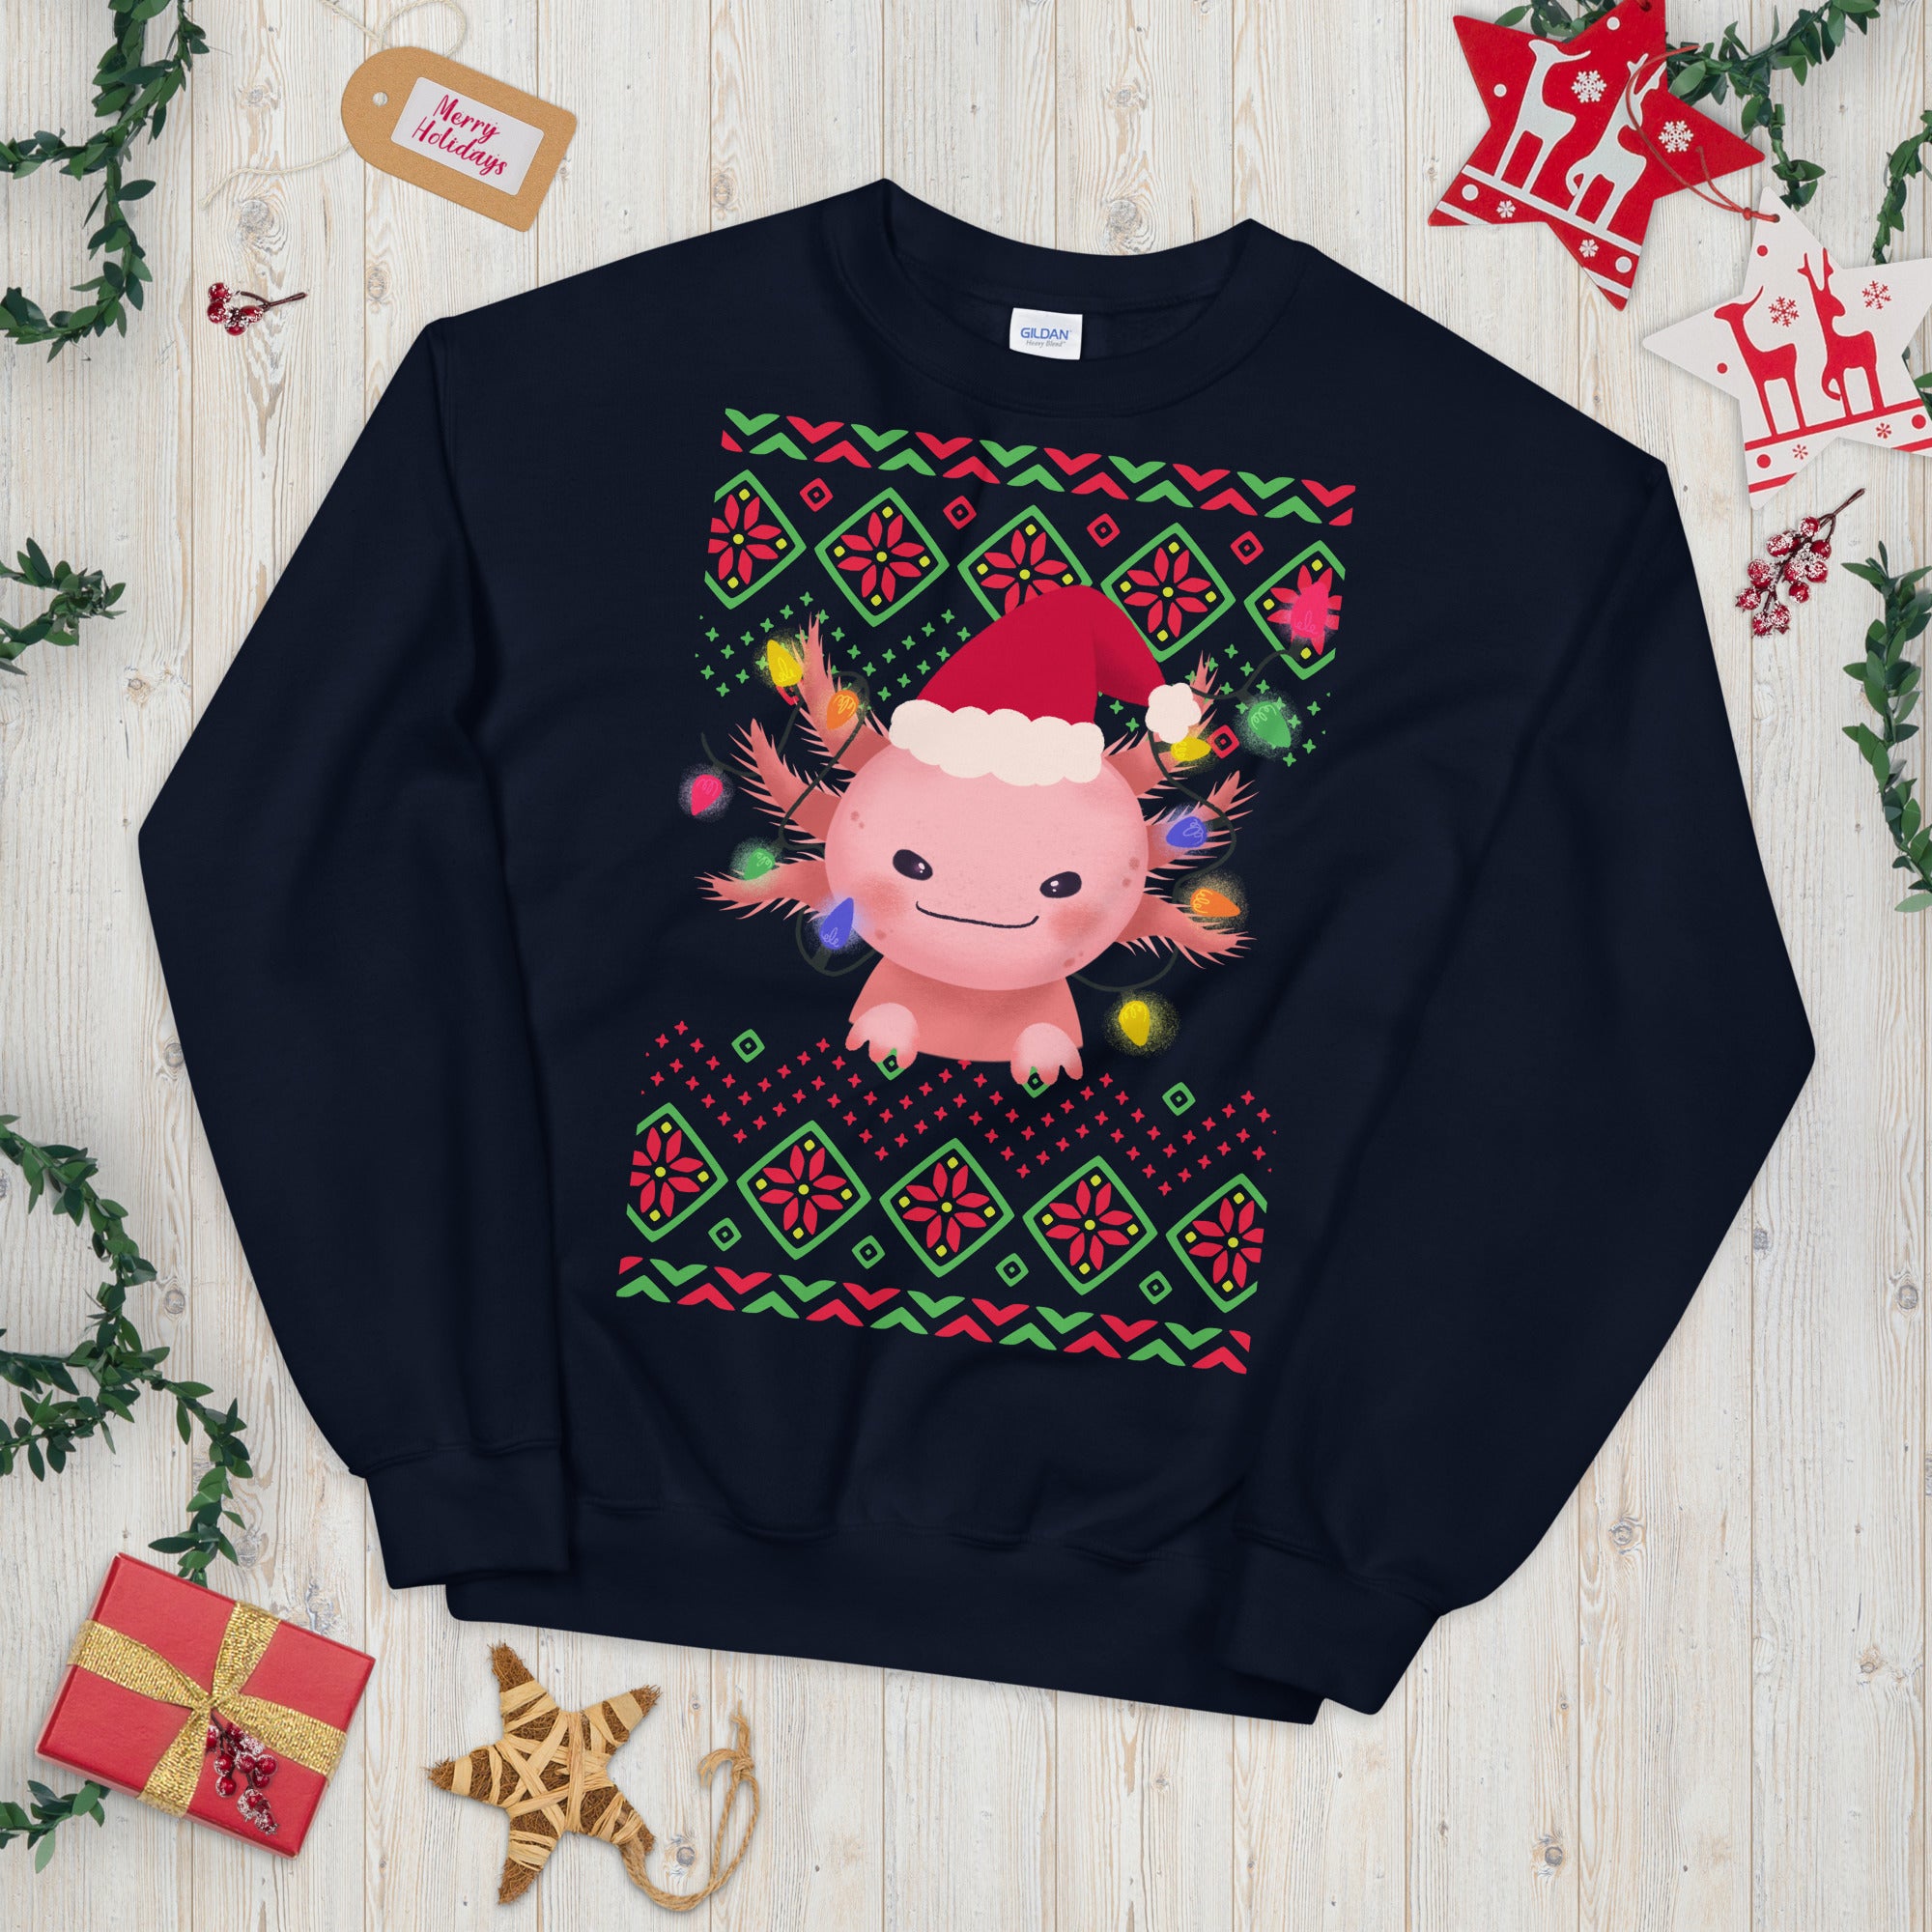 Axolotl Christmas Sweatshirt, Axolotl Ugly Christmas Sweatshirt, Santa Axolotl Sweatshirt, Axolotl Ugly Sweatshirt, Axolotl Xmas Gift